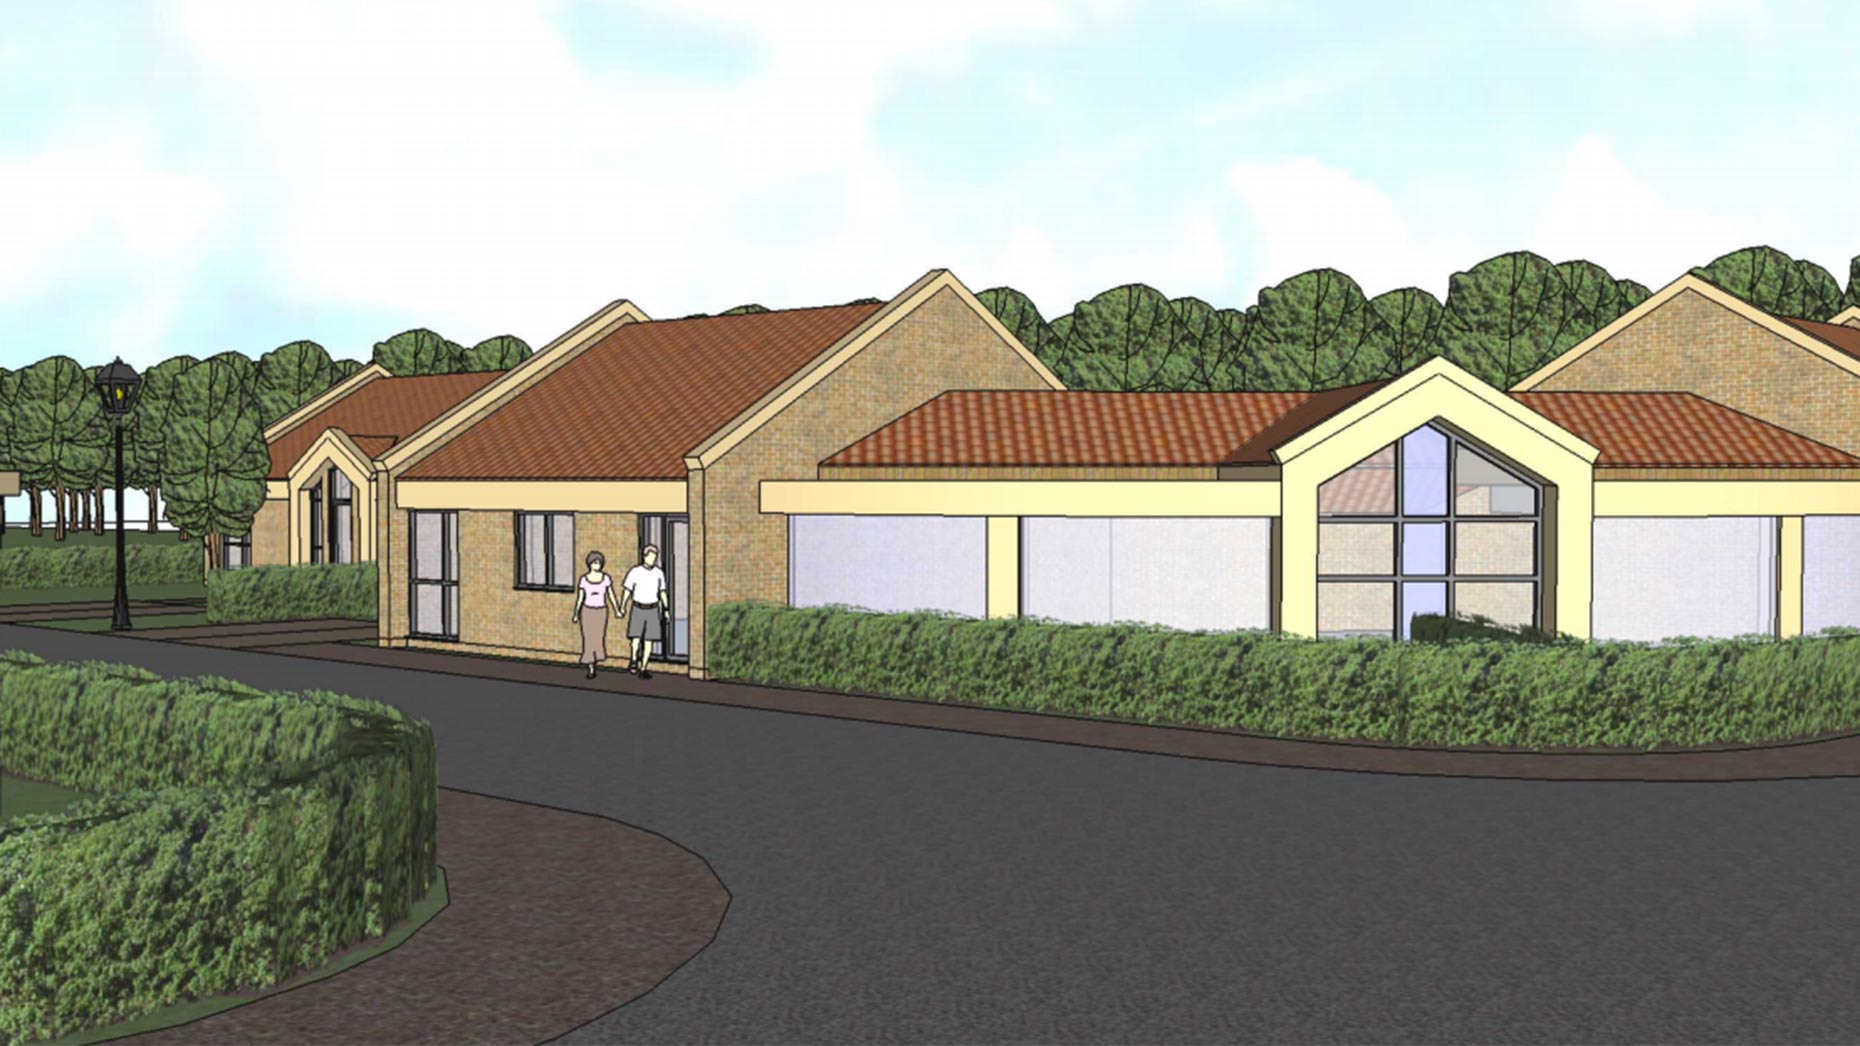 Plans for the bungalows. Photo: John Halton Design Ltd